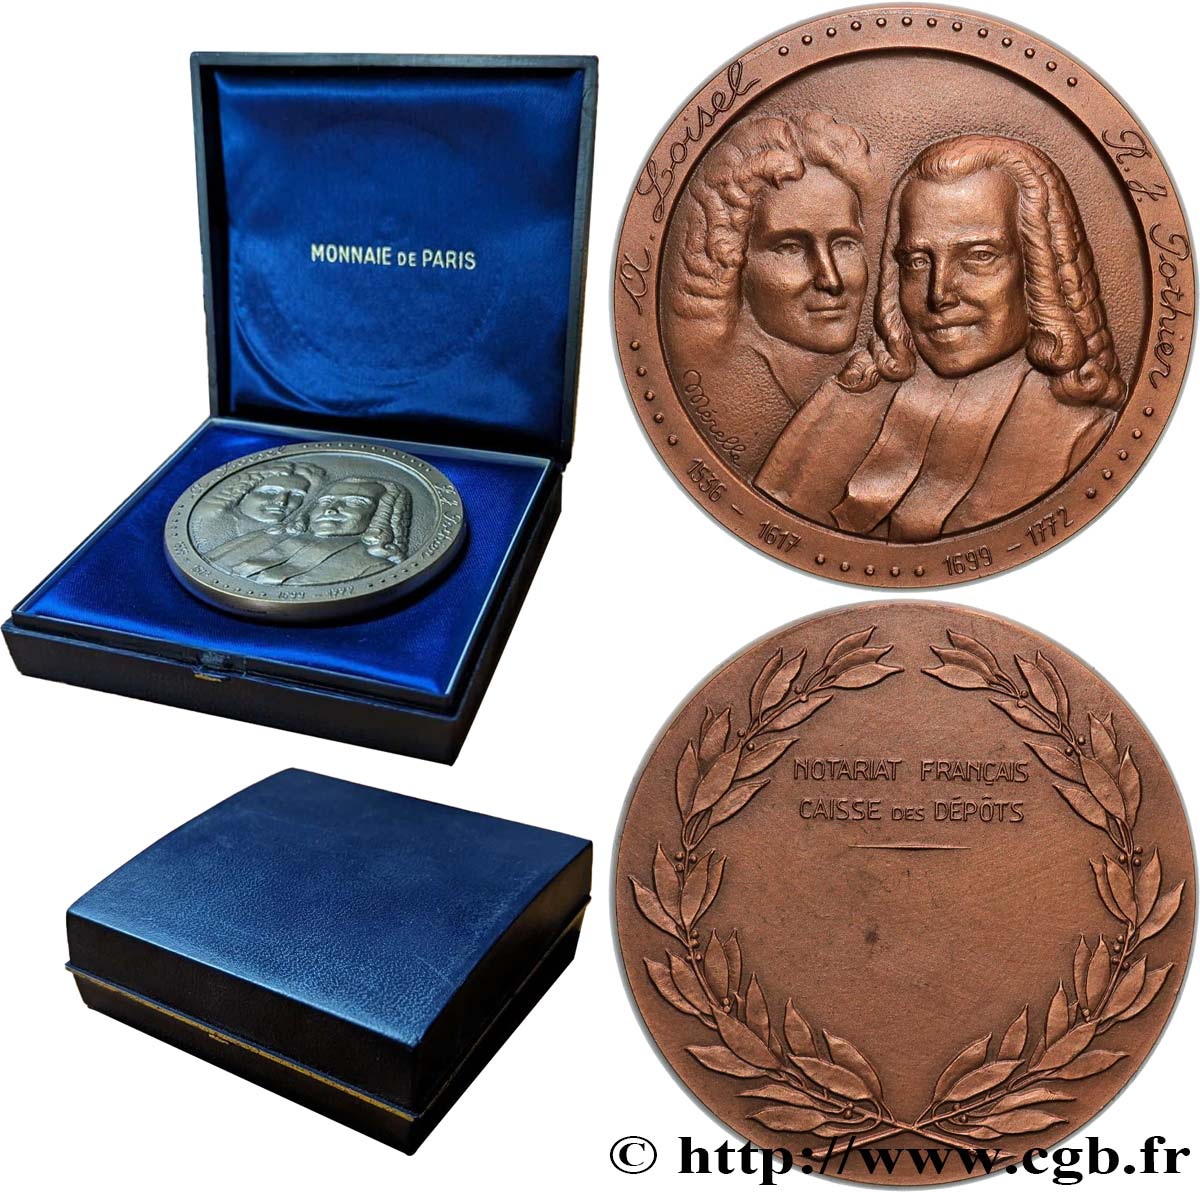 19TH CENTURY NOTARIES (SOLICITORS AND ATTORNEYS) Médaille, Loisel et Pothier, Caisse des dépôts AU